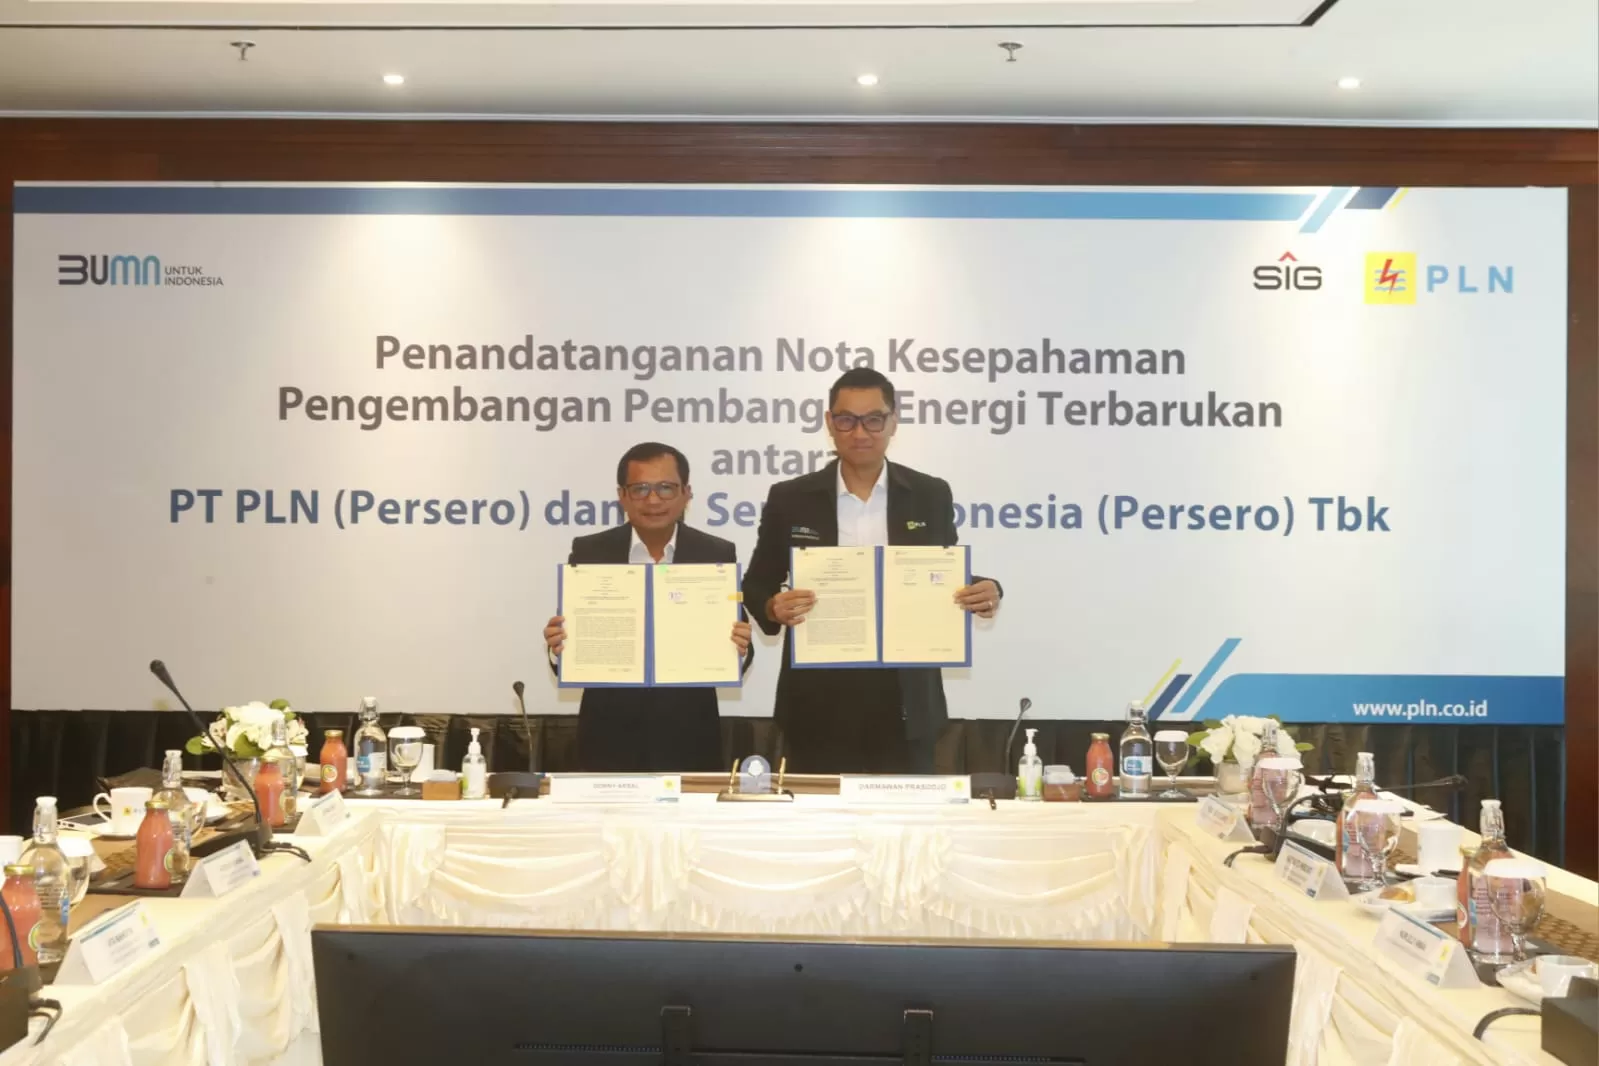 Dirut PT PLN (Persero) Darmawan Prasodjo (kanan) dan Dirut PT Semen Indonesia (Persero) Tbk (SIG) Donny Arsal (kiri) menunjukkan MoU pengembangan energi terbarukan yang telah ditandatangani di Jakarta (DOK.PT PLN (Persero))